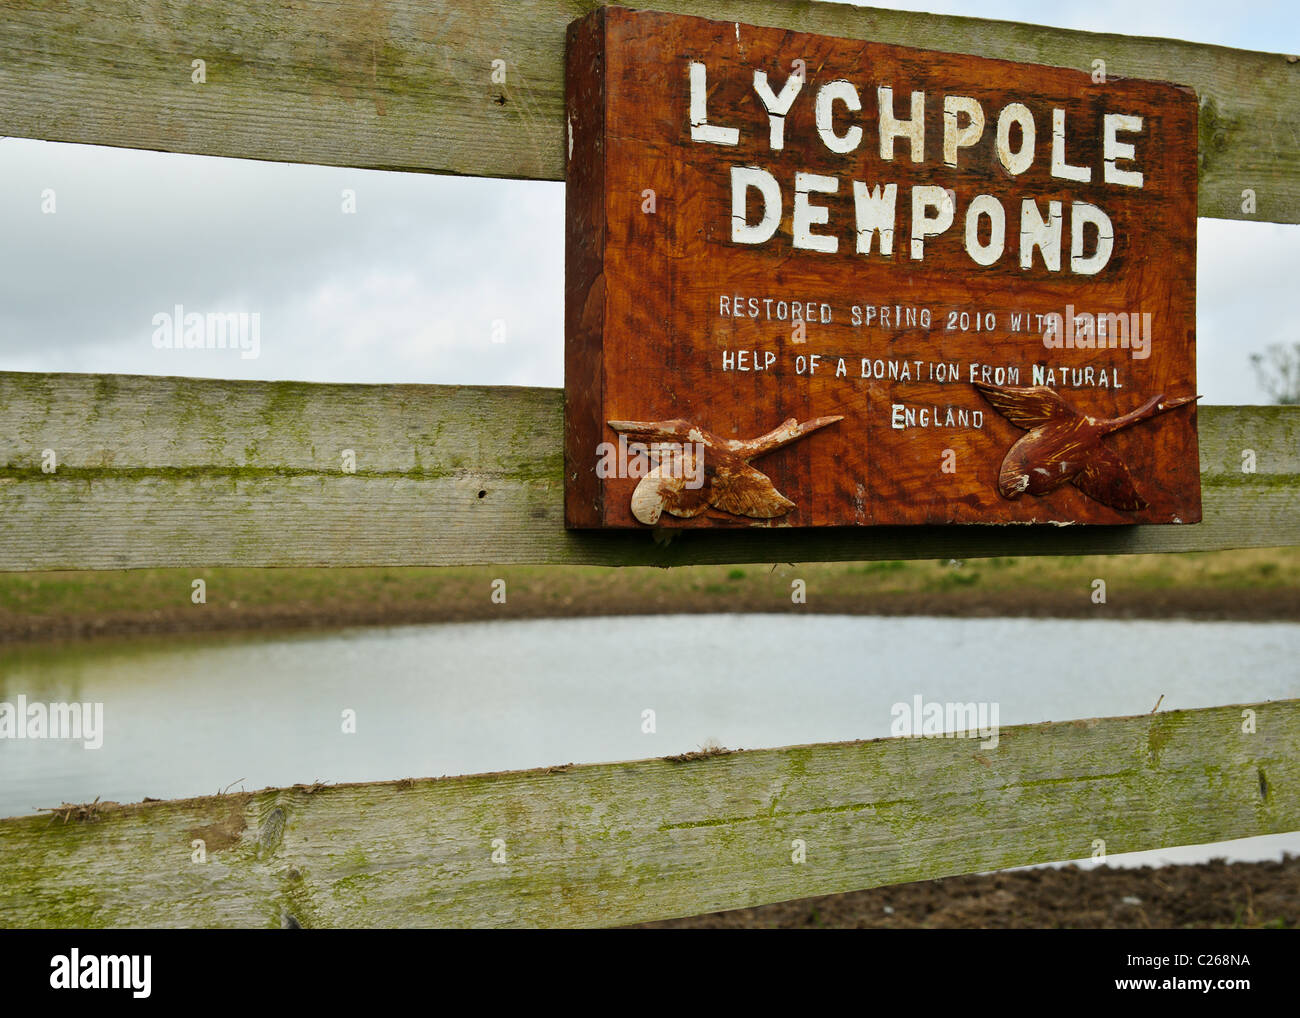 Lychpole dewpond Dewpond est un exemple typique de nicher dans des terres agricoles dans les South Downs. Il a été restauré au printemps 2010 avec l'aide de Natu Banque D'Images